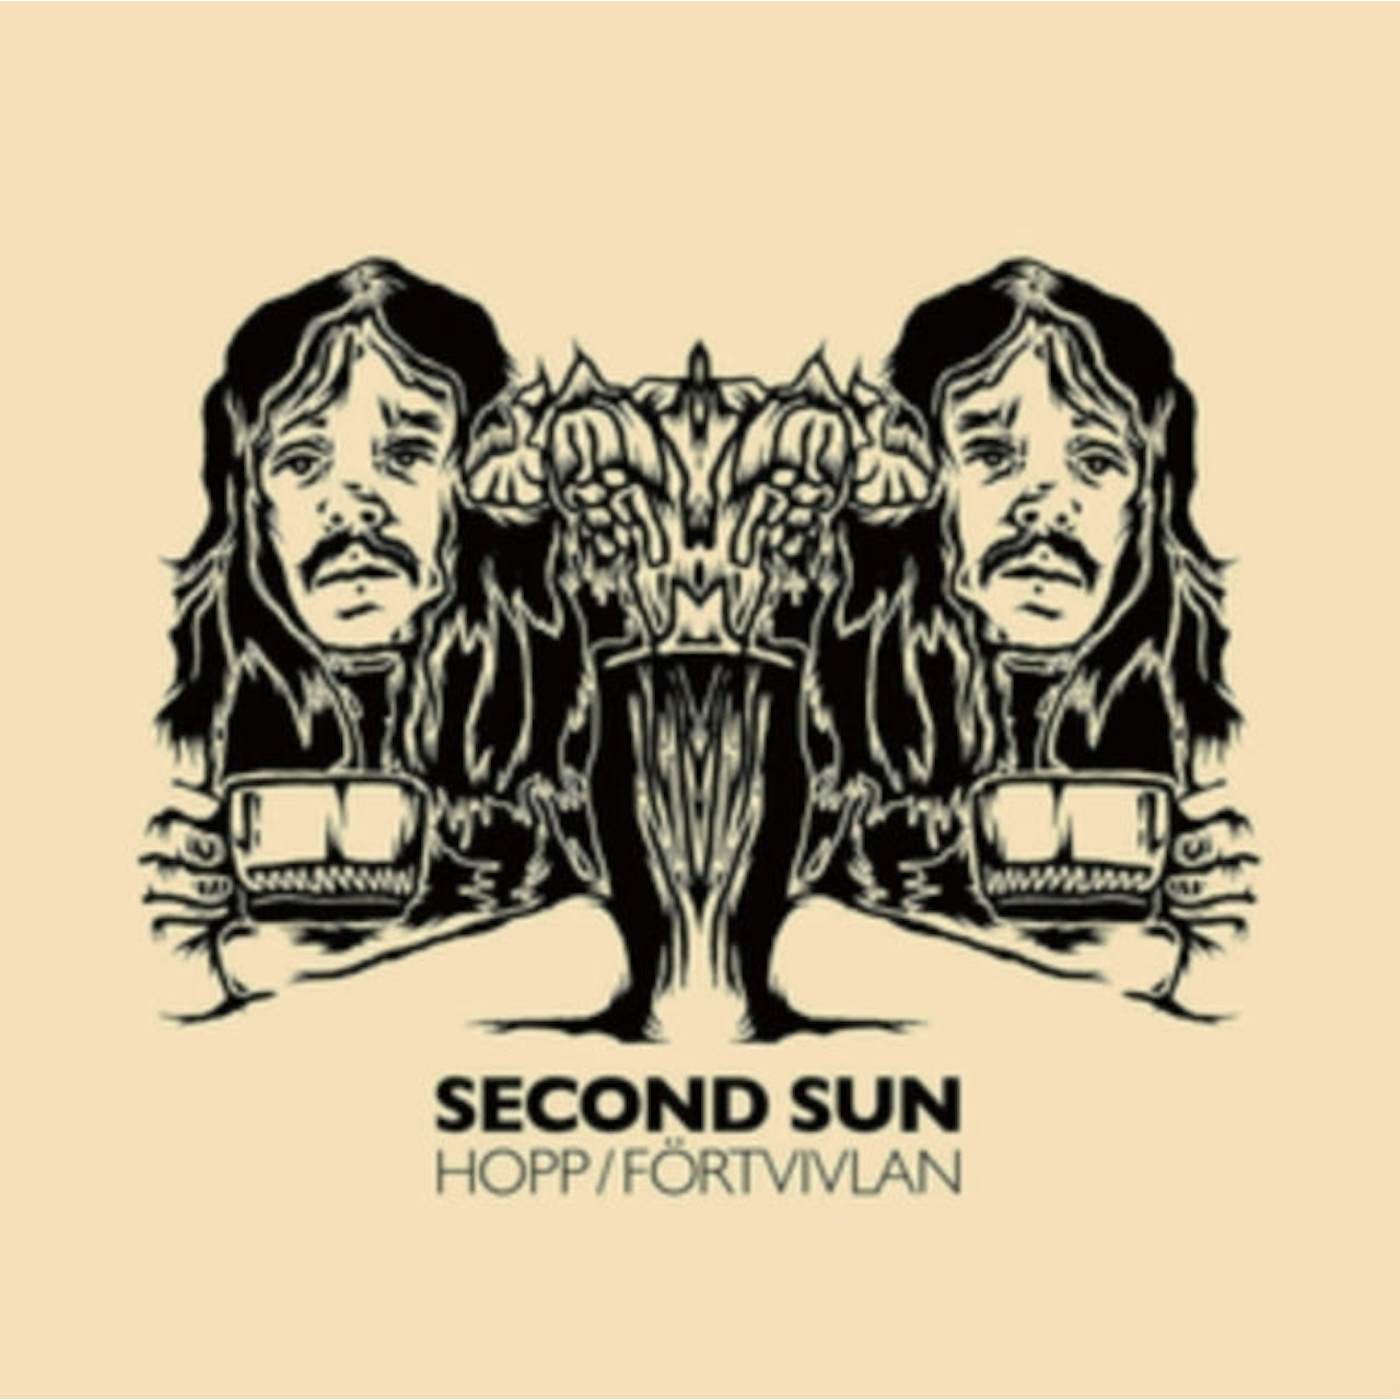 Second Sun LP - Hopp / FÌÎ__rtvivlan (Vinyl)